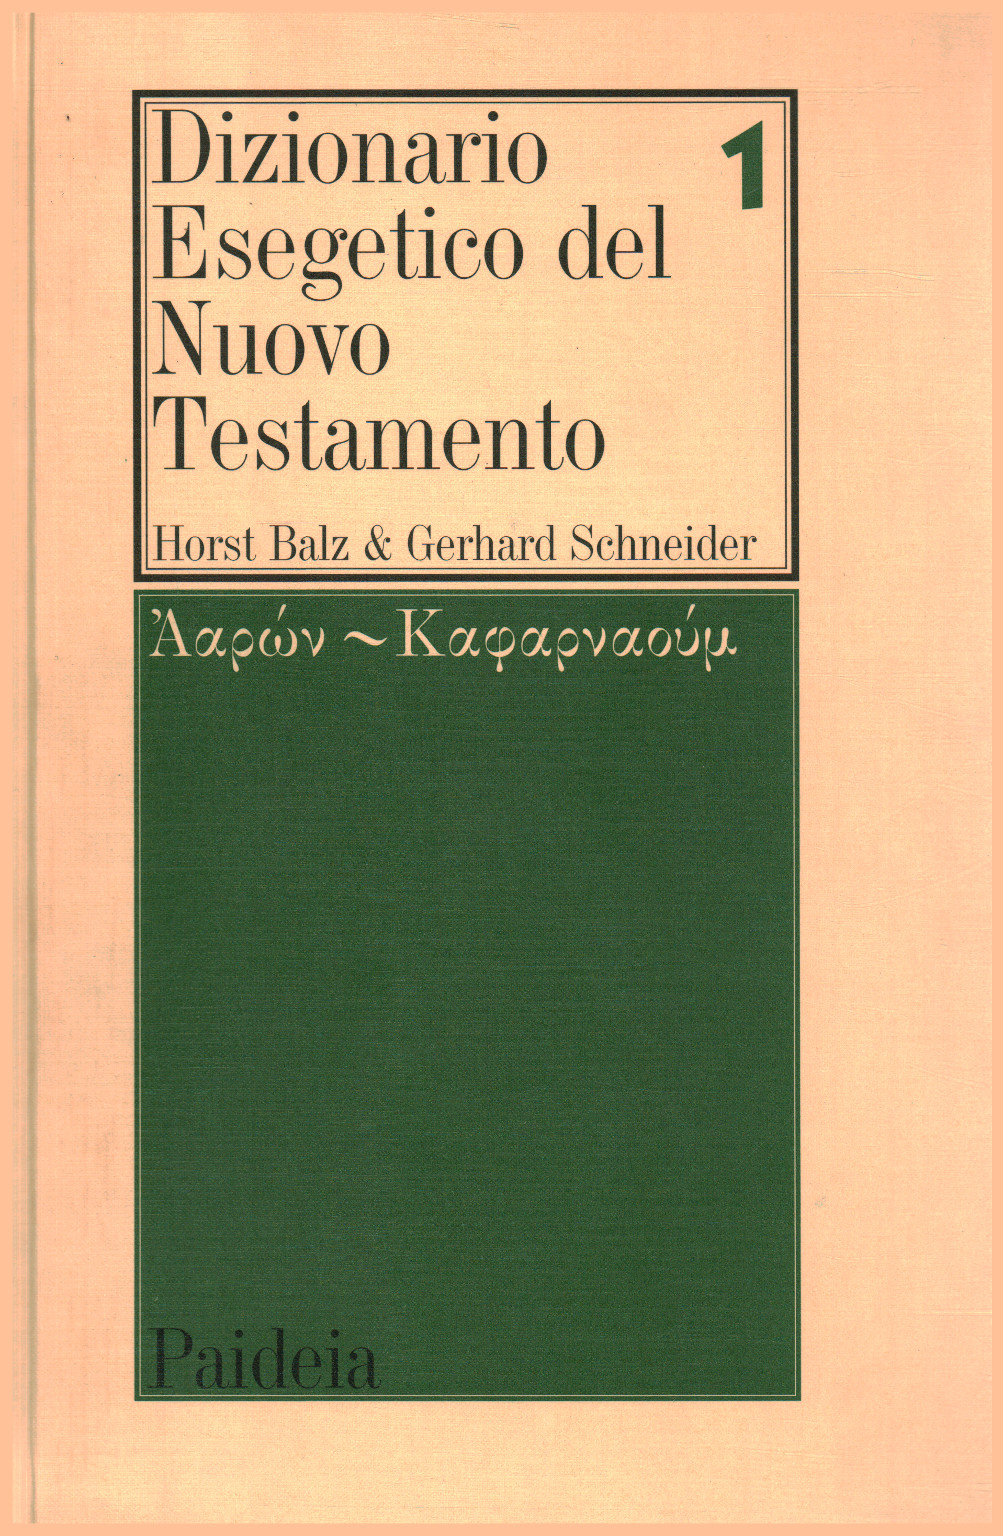 Dizionario Esegetico del Nuovo Testamento (vol. 1), s.a.